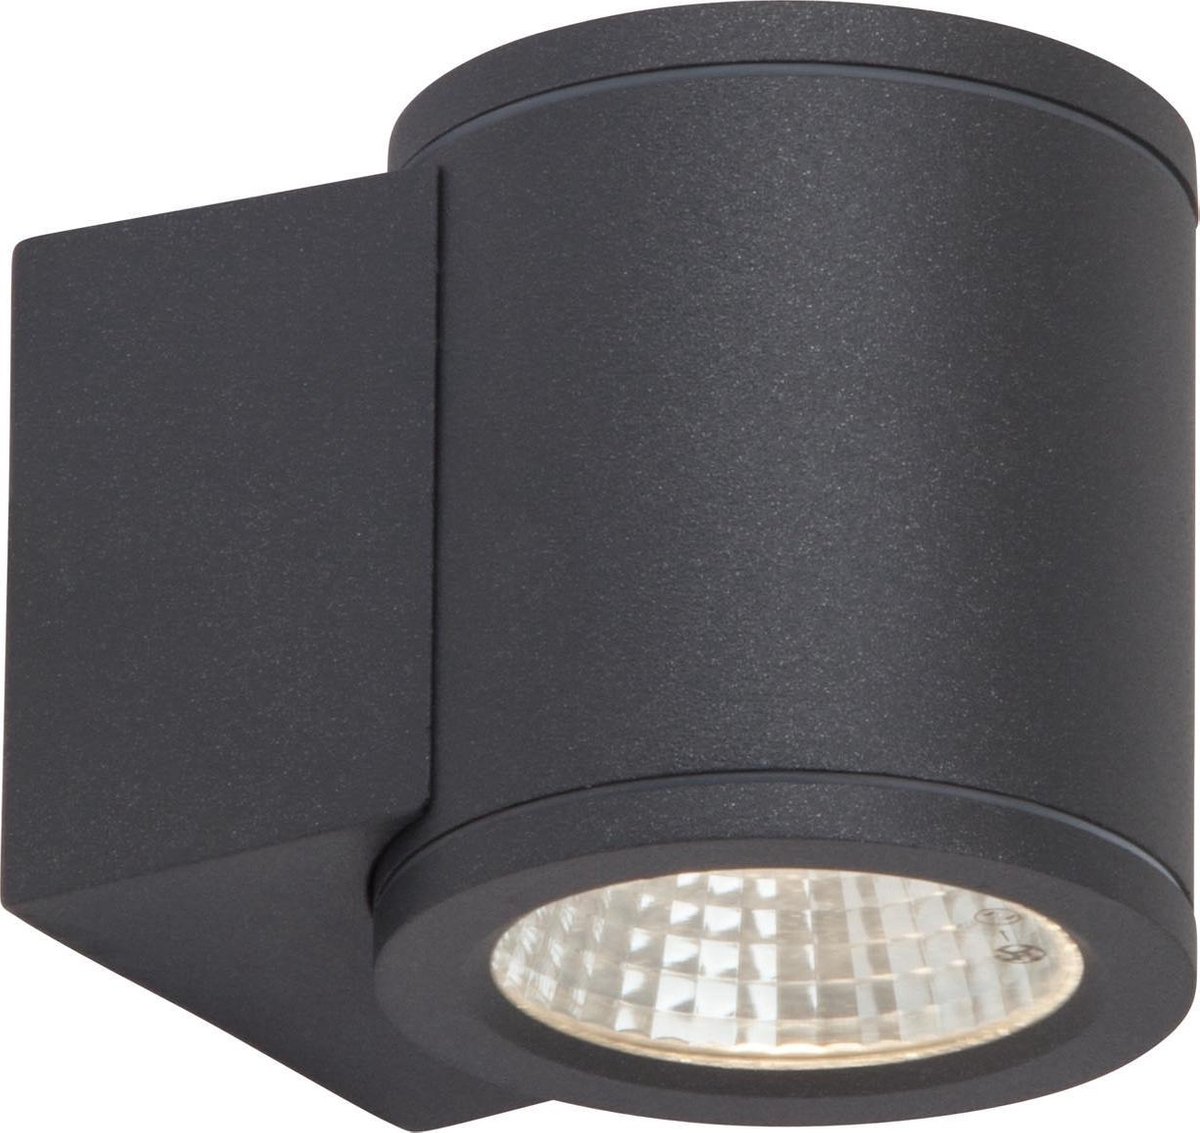 AEG lamp Argo LED buitenwandlamp 1 licht antraciet | 1x 6W LED geïntegreerd (COB), (550lm, 3000K) | Schaal A ++ tot E | IP-beschermingsklasse: 54 - spatwaterdicht